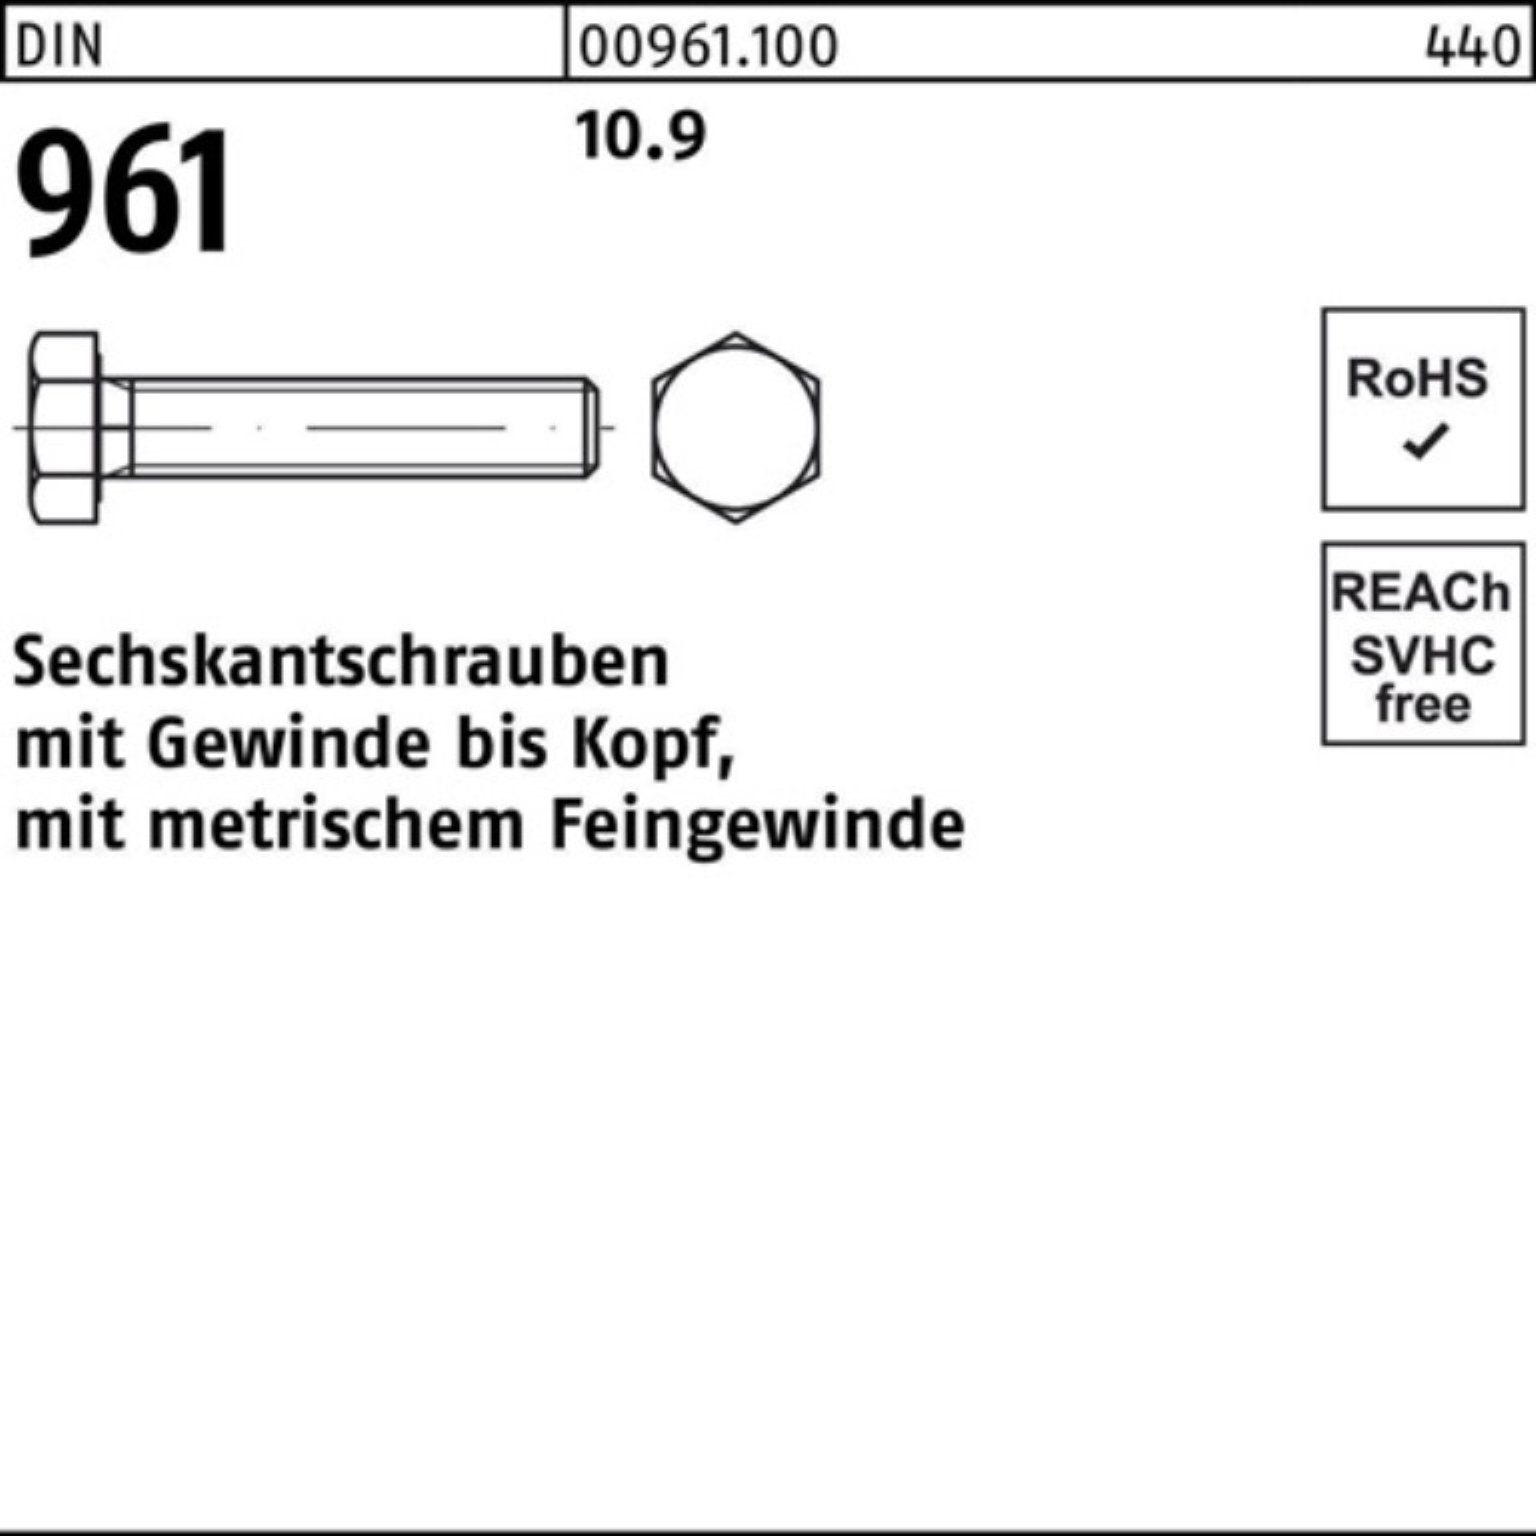 Reyher Sechskantschraube 100er Pack Sechskantschraube VG 961 DIN Stück 10.9 M16x1,5x100 25 DIN